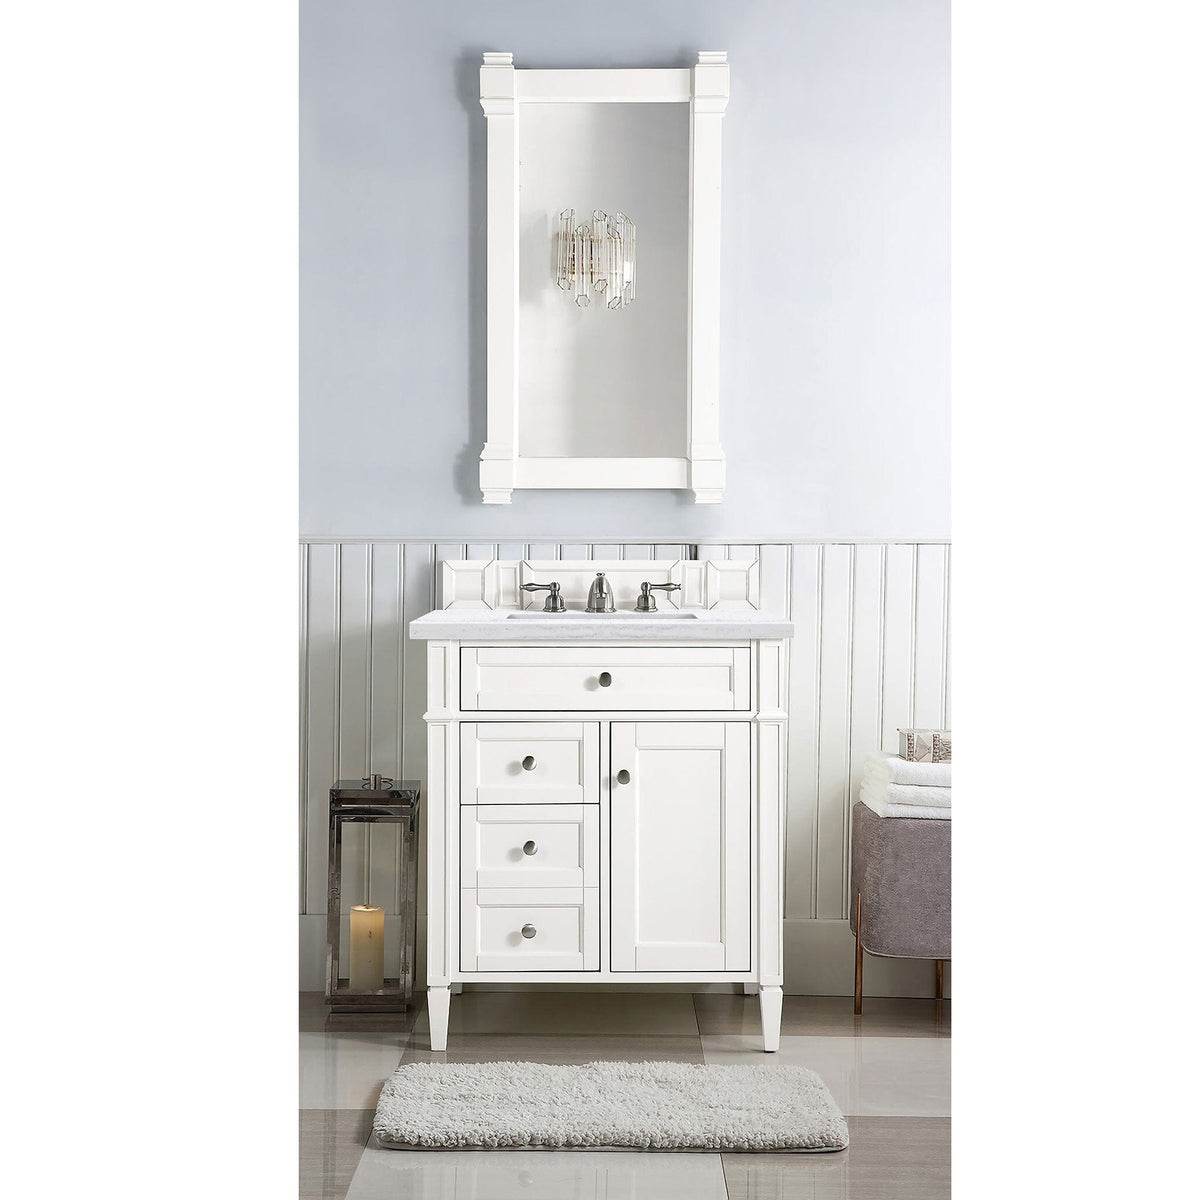 30" Brittany Single Bathroom Vanity, Bright White